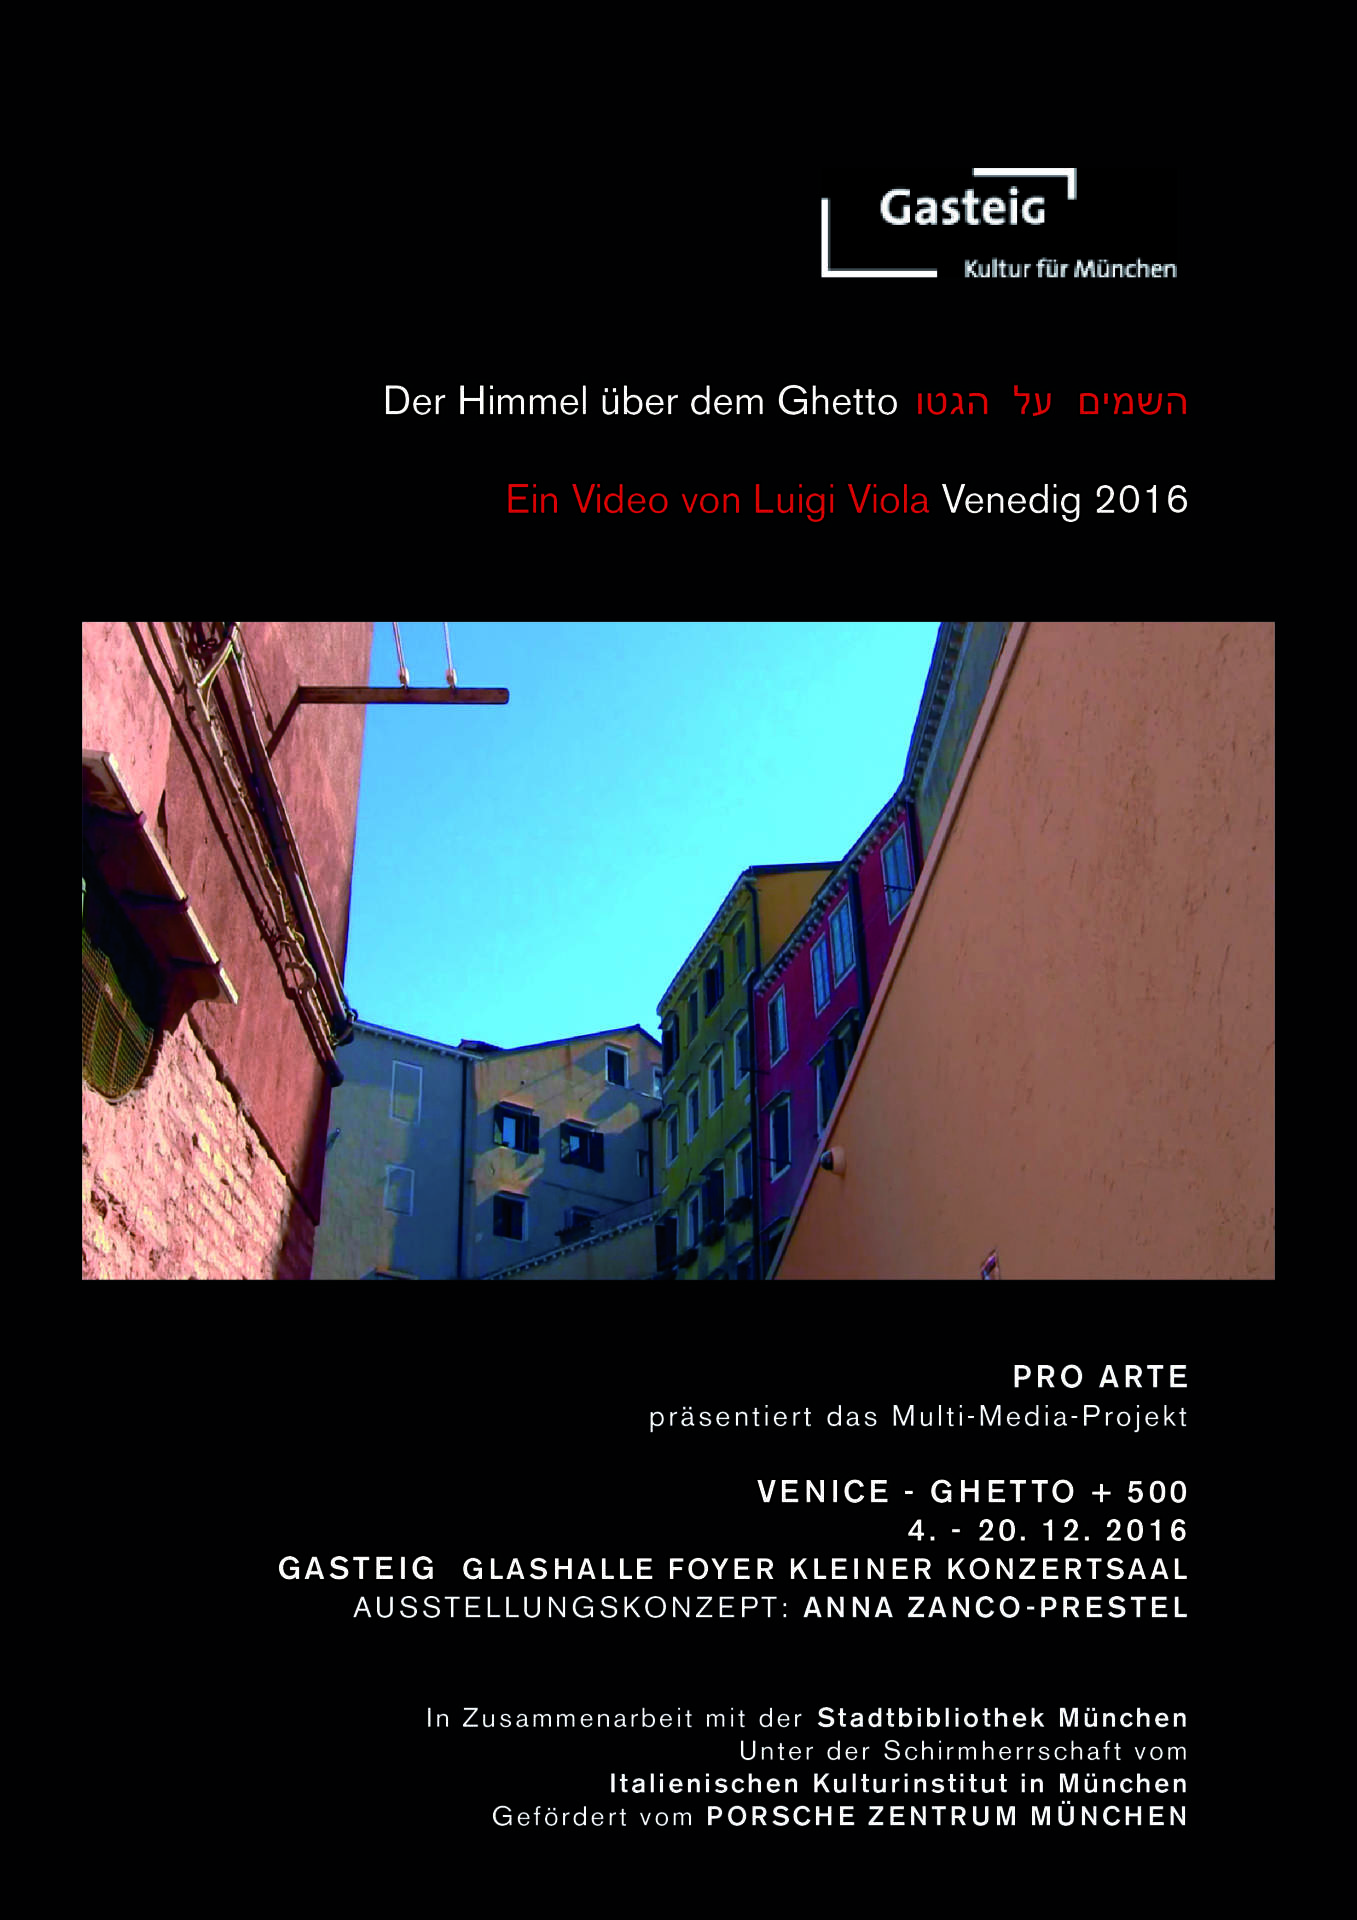 Venice Ghetto + 500, curated by Anna Zanco Prestel
Gasteig, Munich